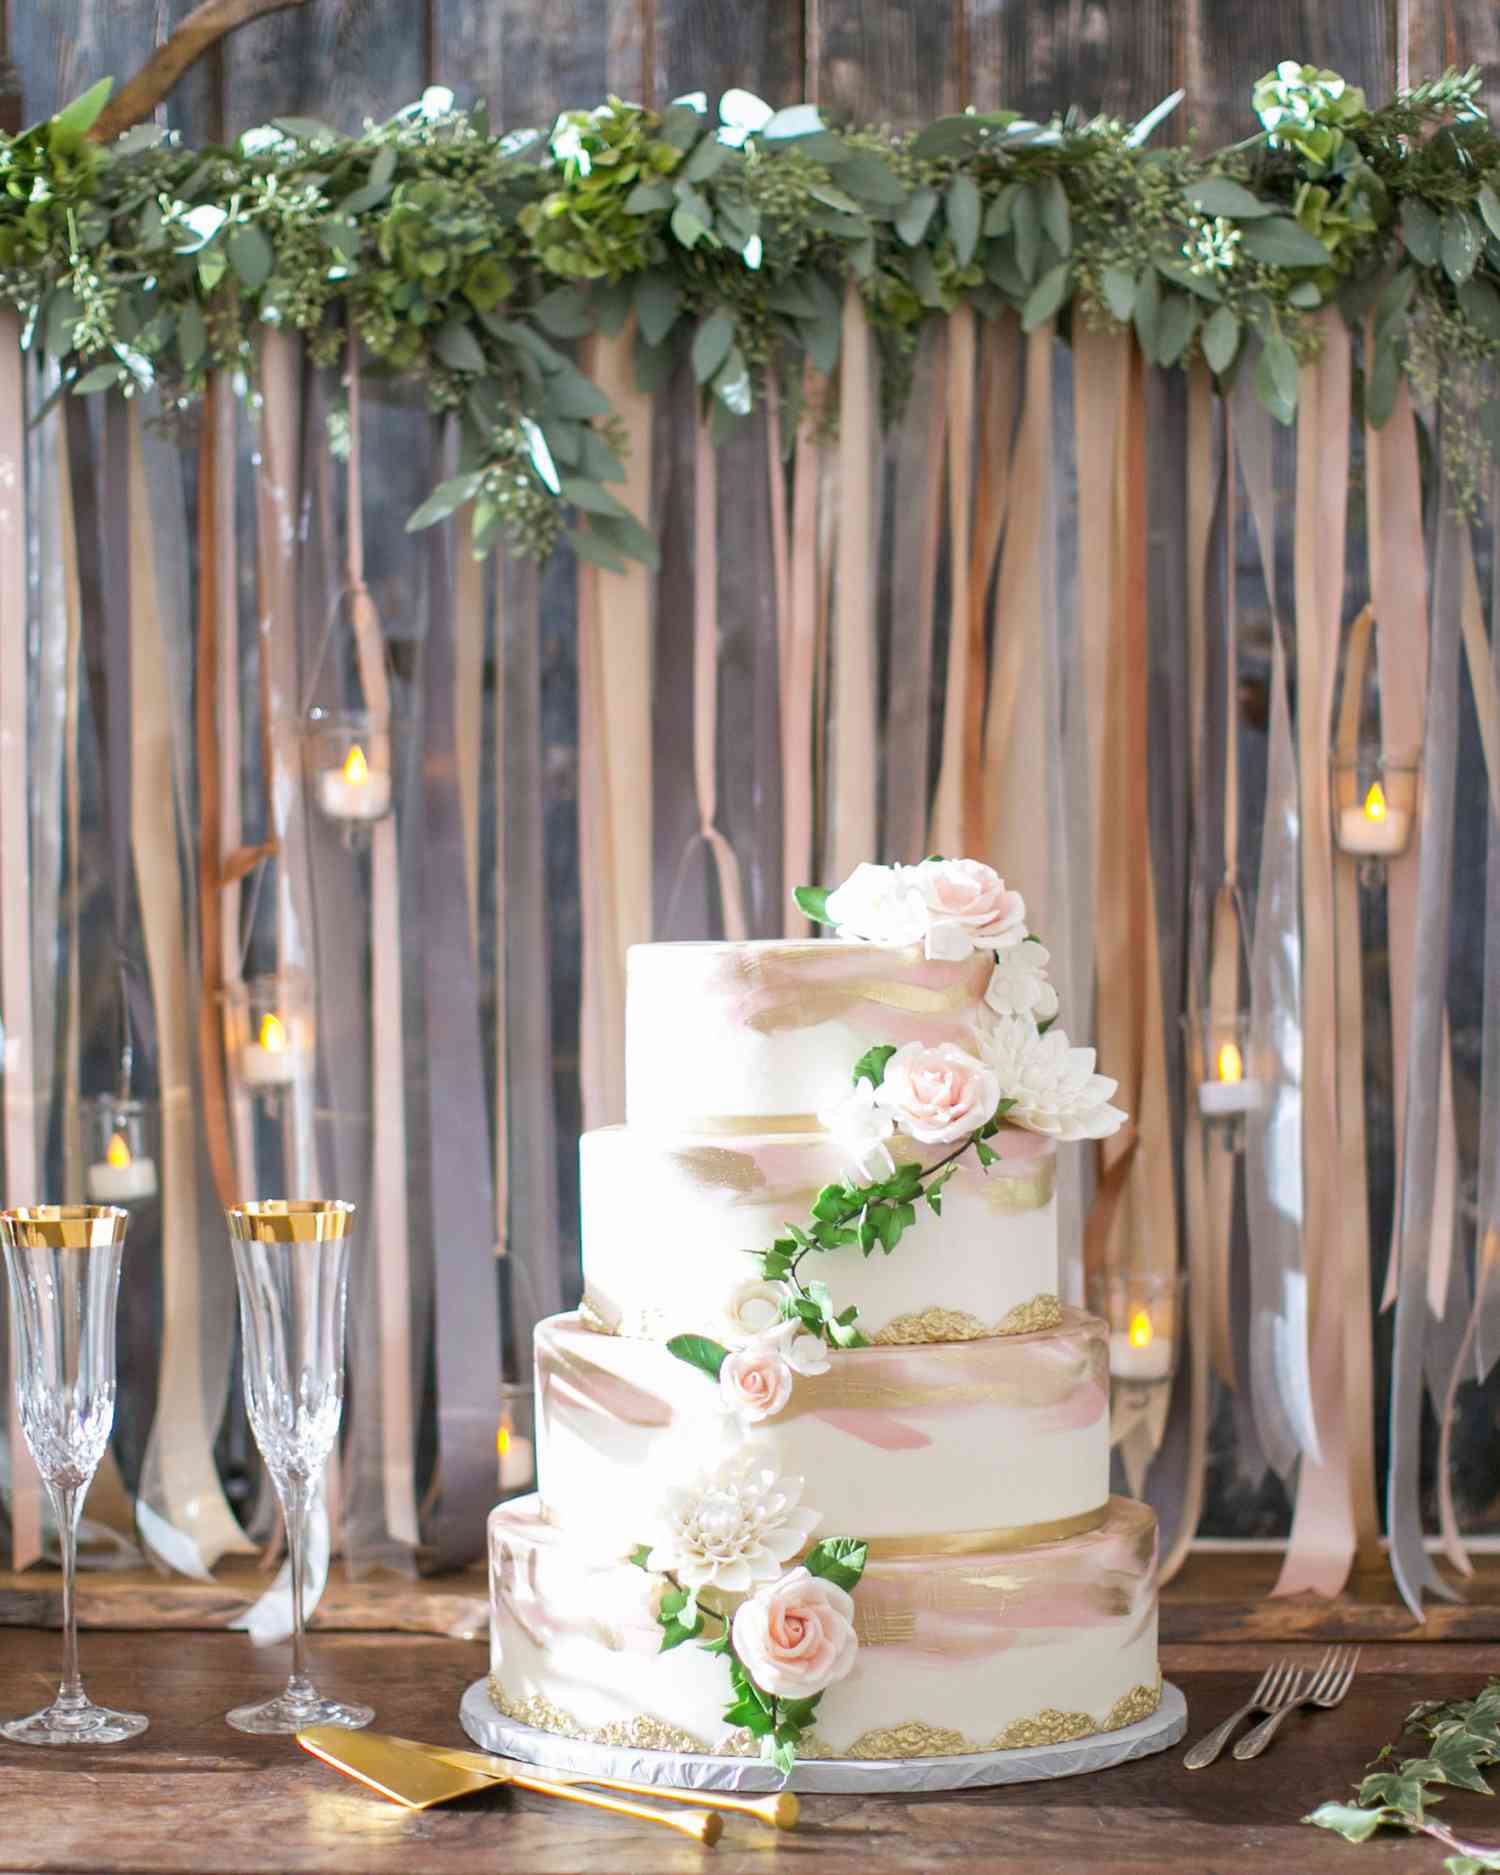 briana-adam-wedding-cake-1316-s112471-1215.jpg